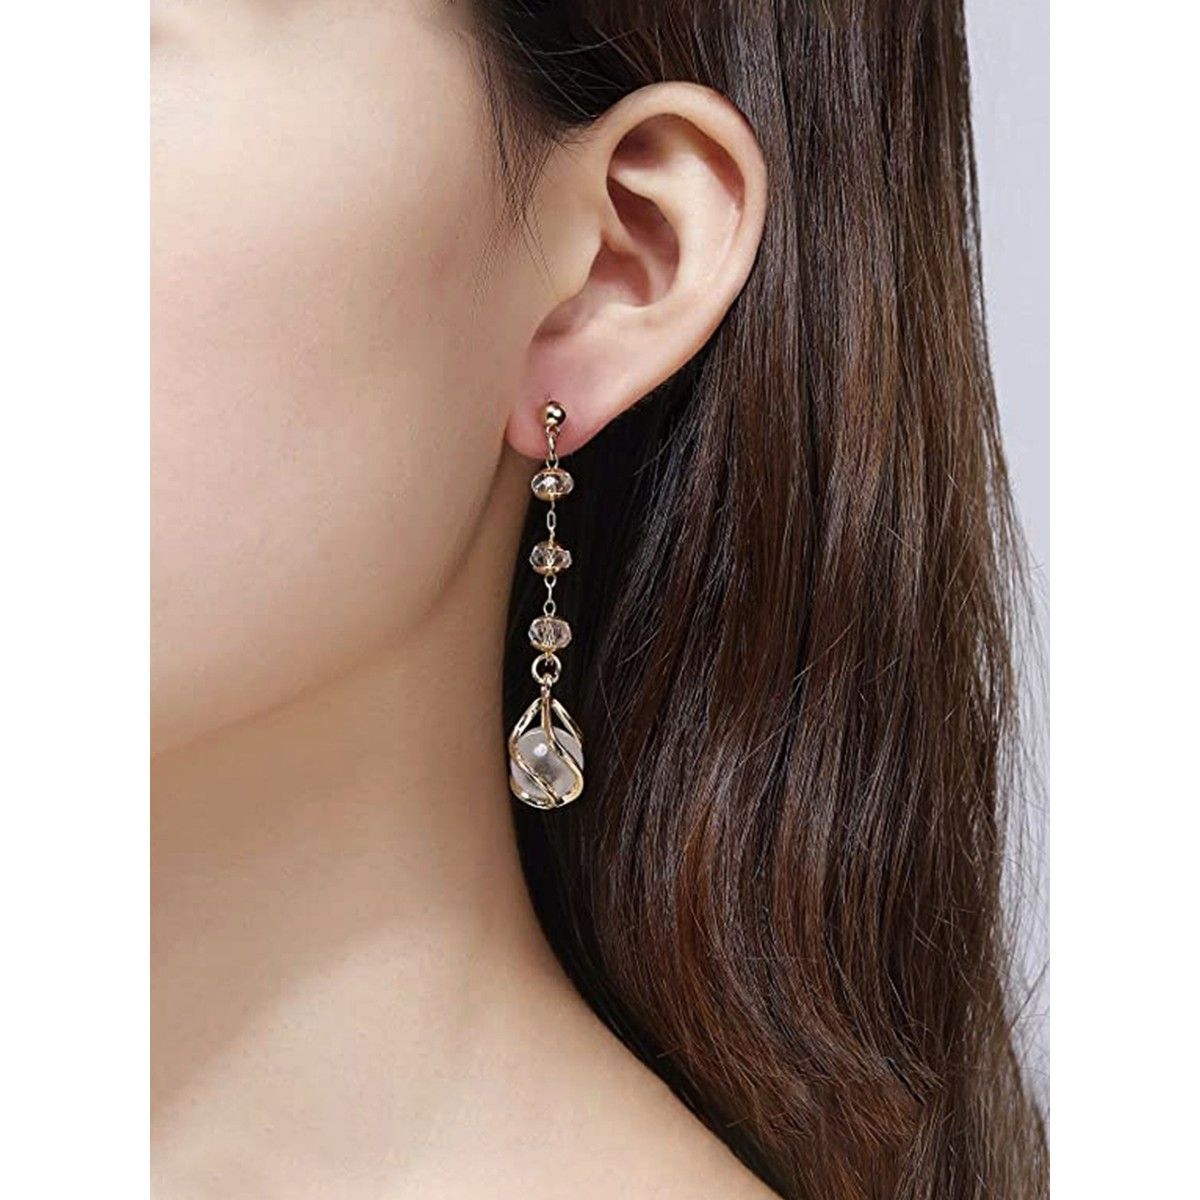 Rhinestone diamond Crystal Dangle Earrings Statement Drop Earrings